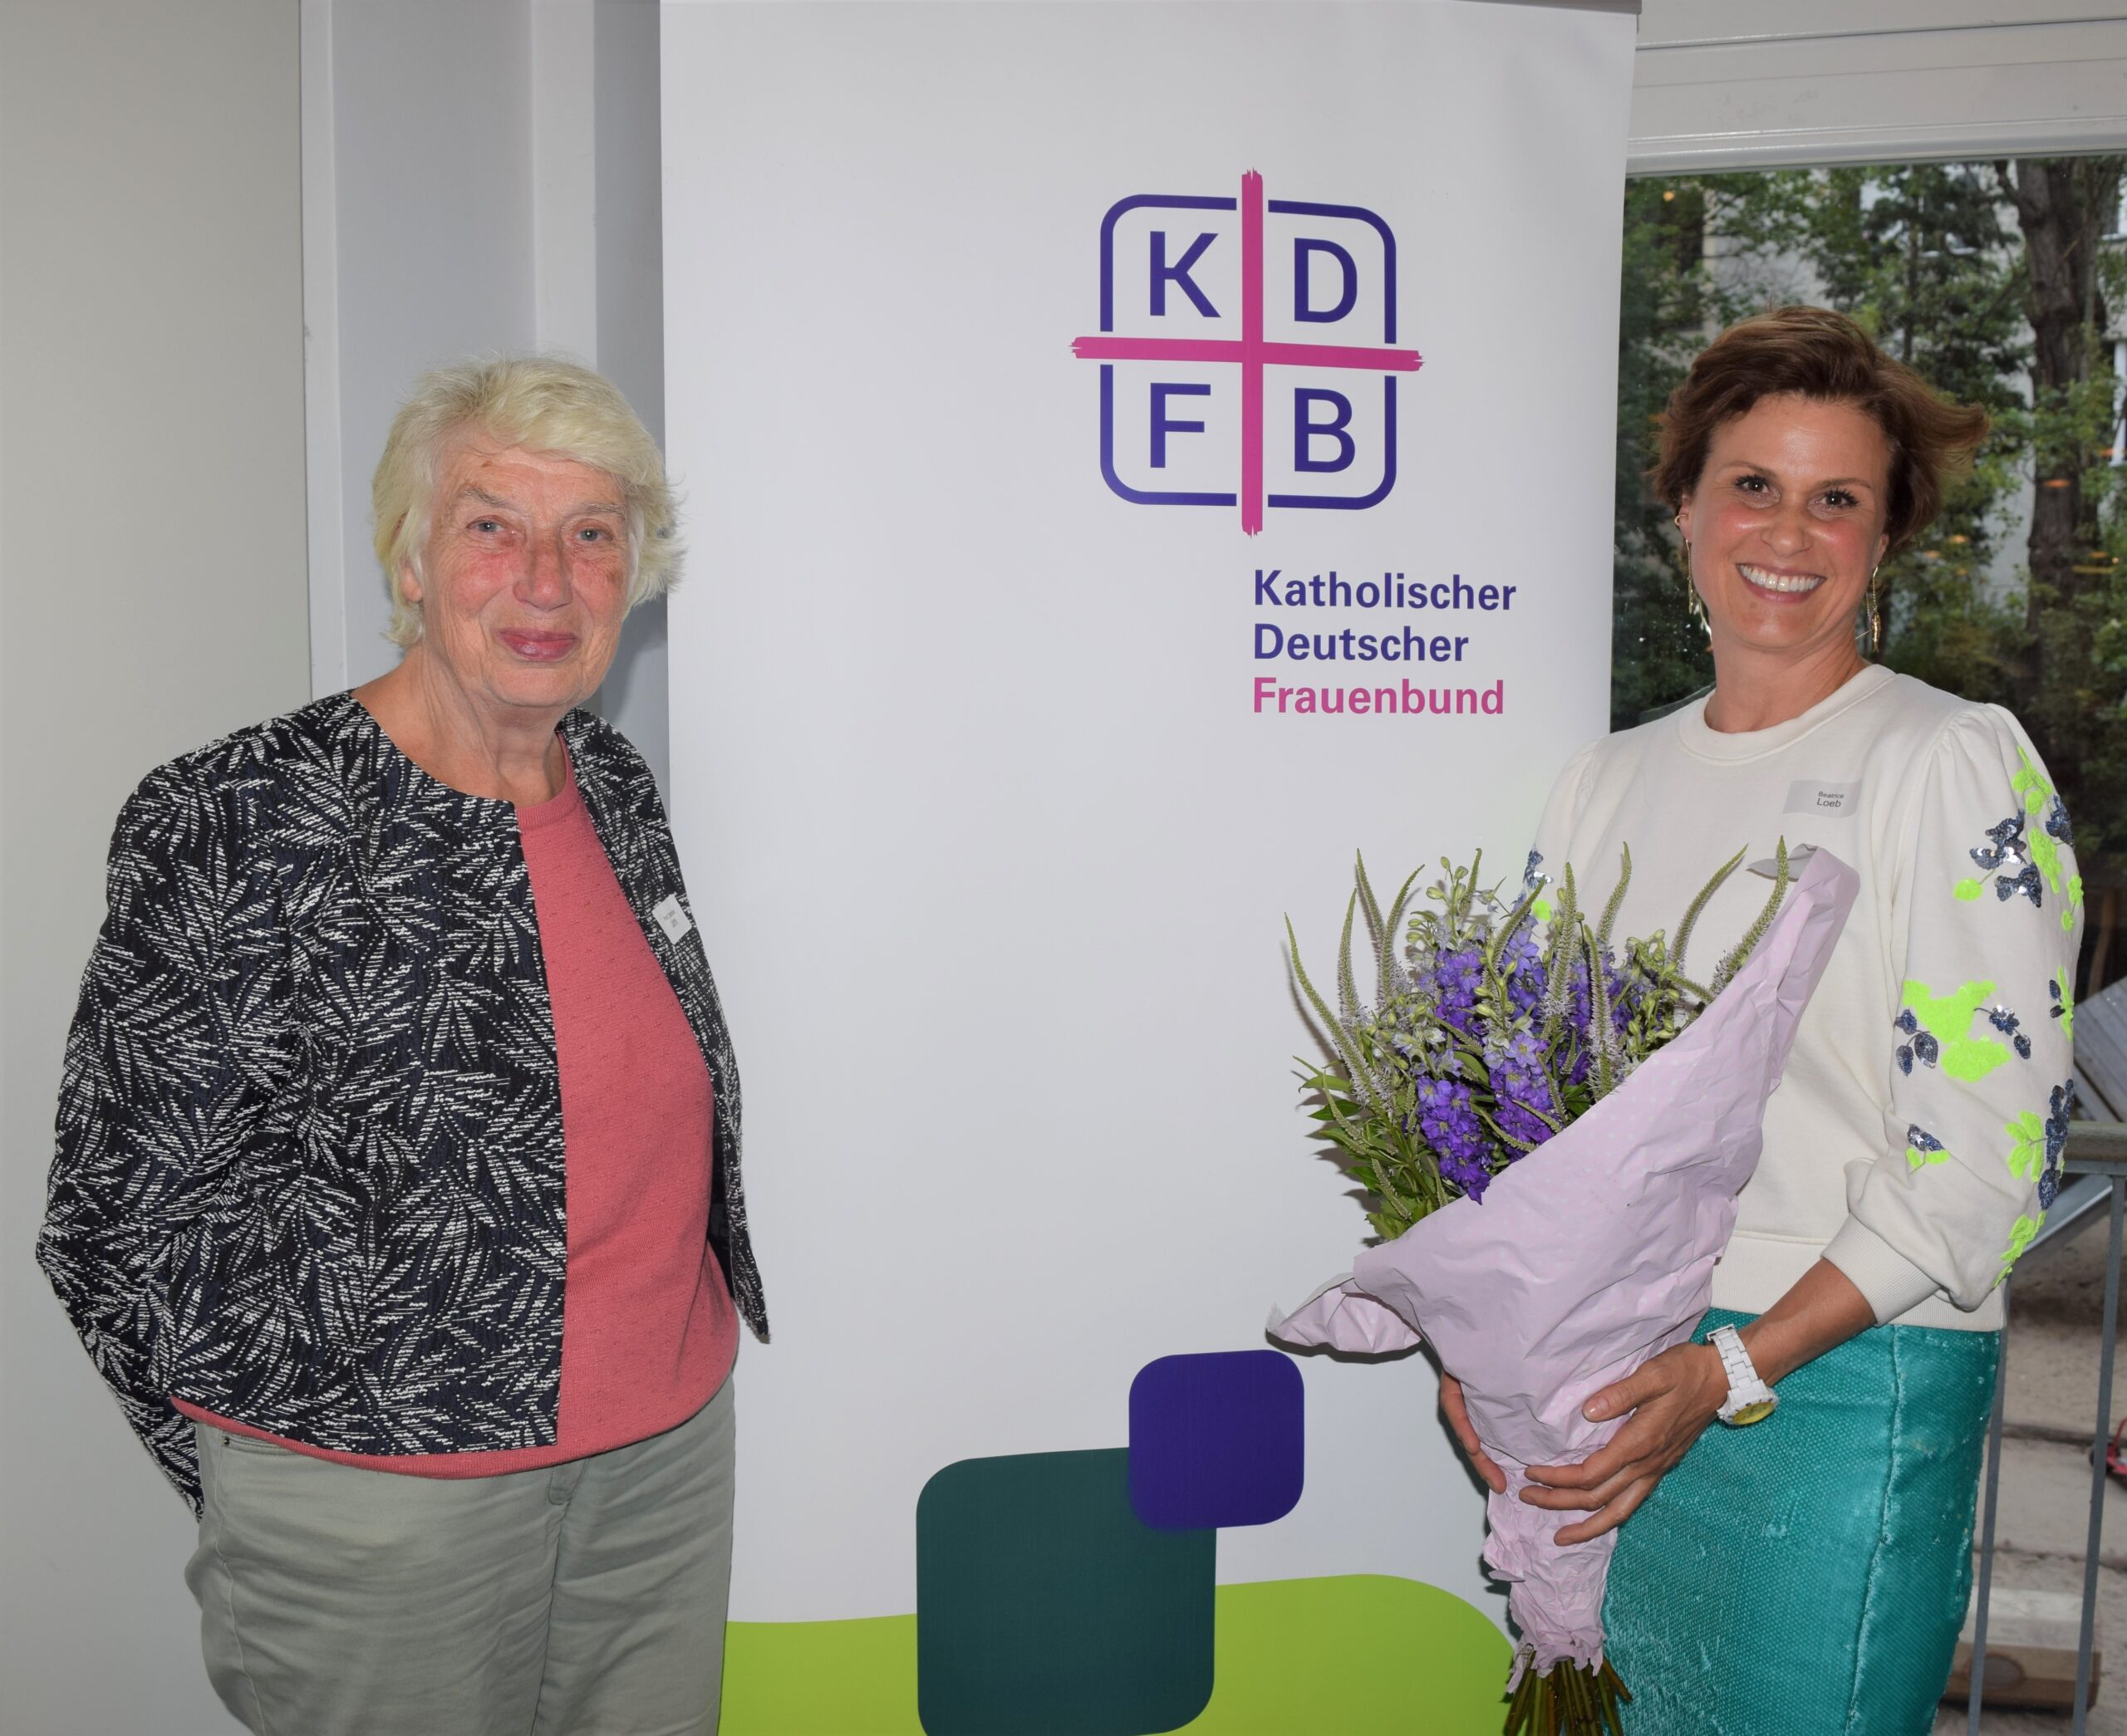 Vor dem Rollup mit dem Logo des Katholischen Deutschen Frauenbundes stehen lächelnd Prof. Barbara John, Vorsitzende des KDFB Berlin, und Festrednerin Beatrice Loeb, Vorsitzende der Gesellschaft für Christlich-jüdische Zusammenarbeit in Berlin, mit einem Blumenstrauß in der Hand.